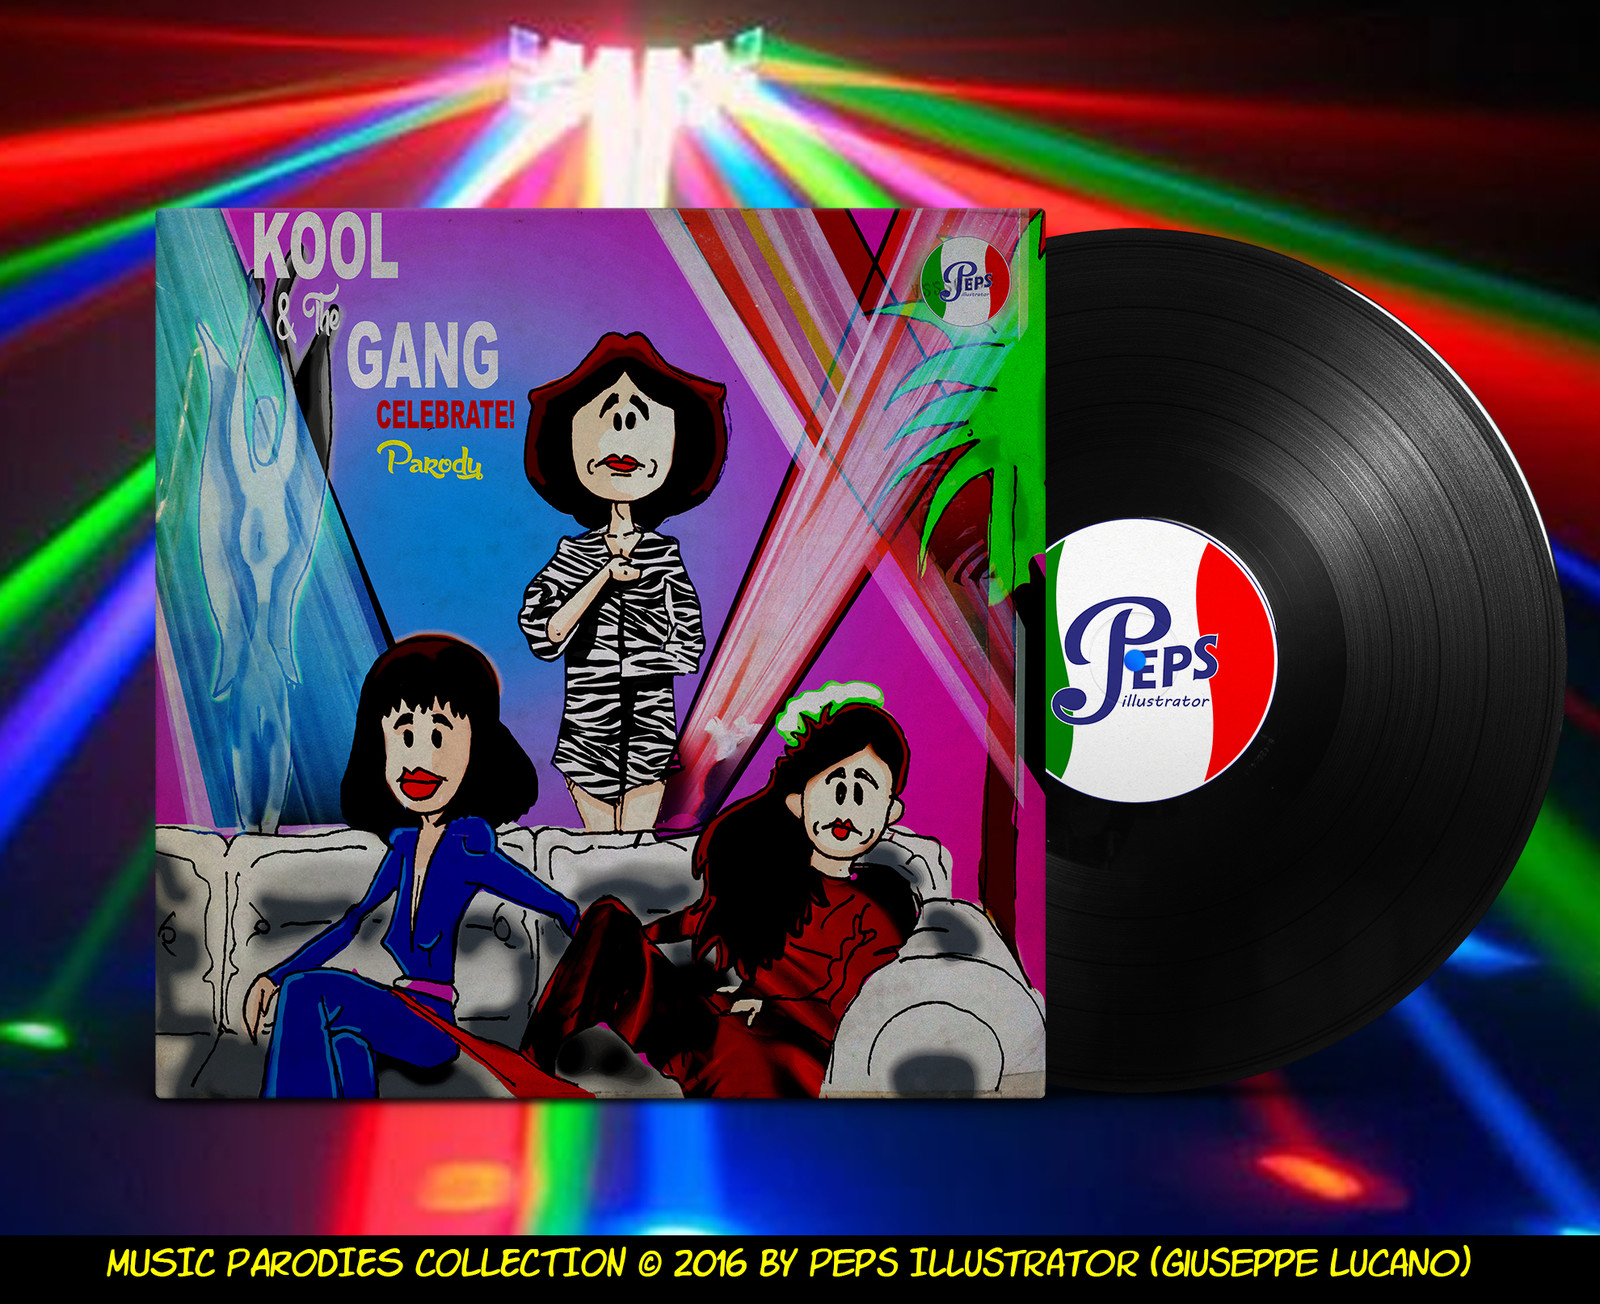 Kool & the gang - celebrate!. Пародия в Музыке. Kool & the gang Celebration. Детские песни пародия